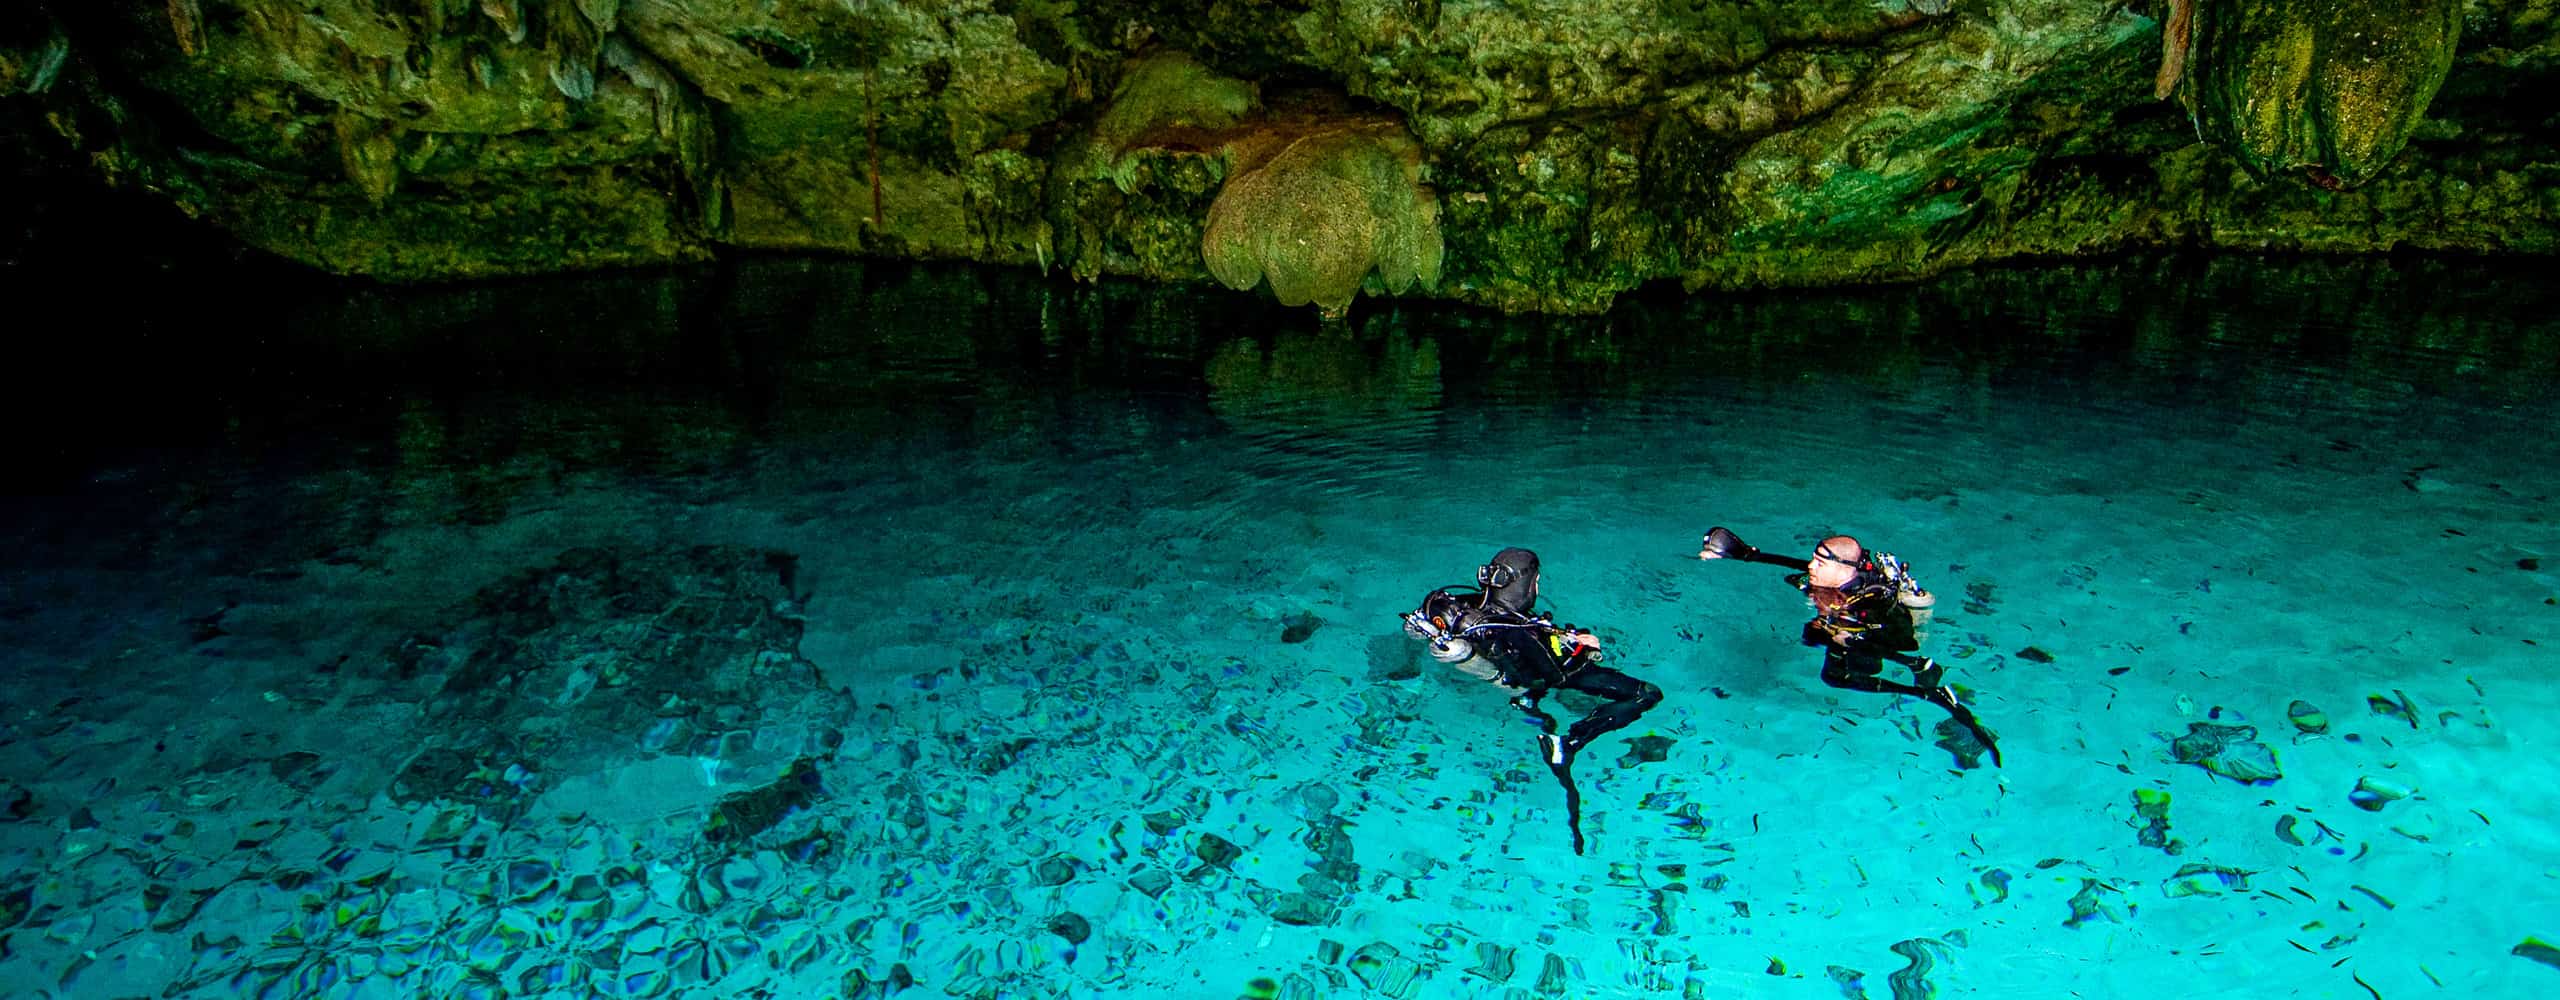 Scuba Diving In A Cenote, Mexico